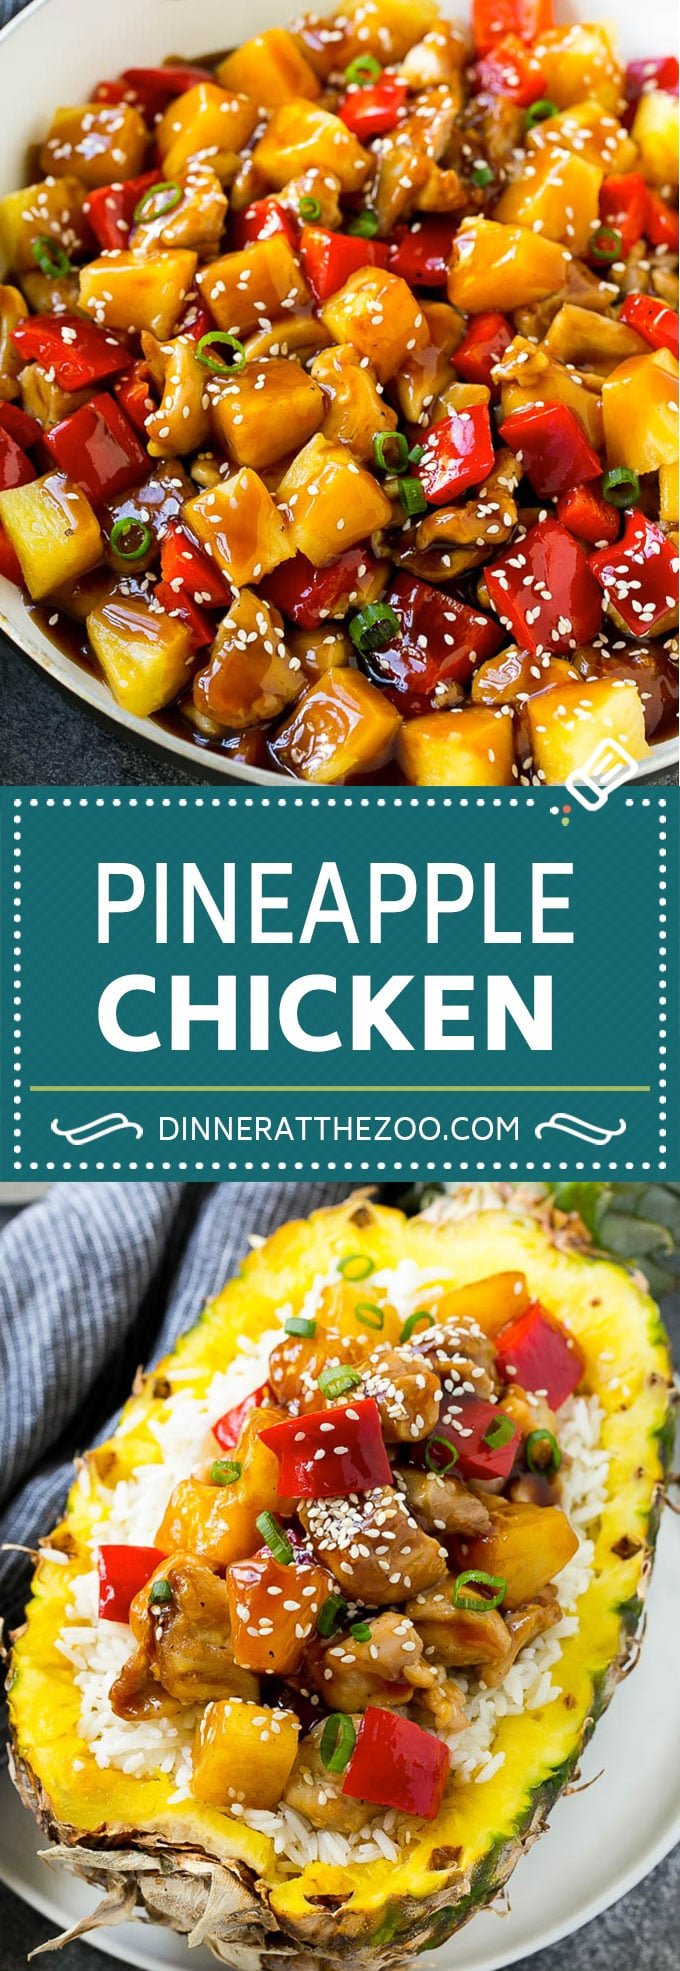 Pineapple Chicken | Hawaiian Chicken | Chicken Stir Fry #pineapple #chicken #dinner #stirfry #dinneratthezoo